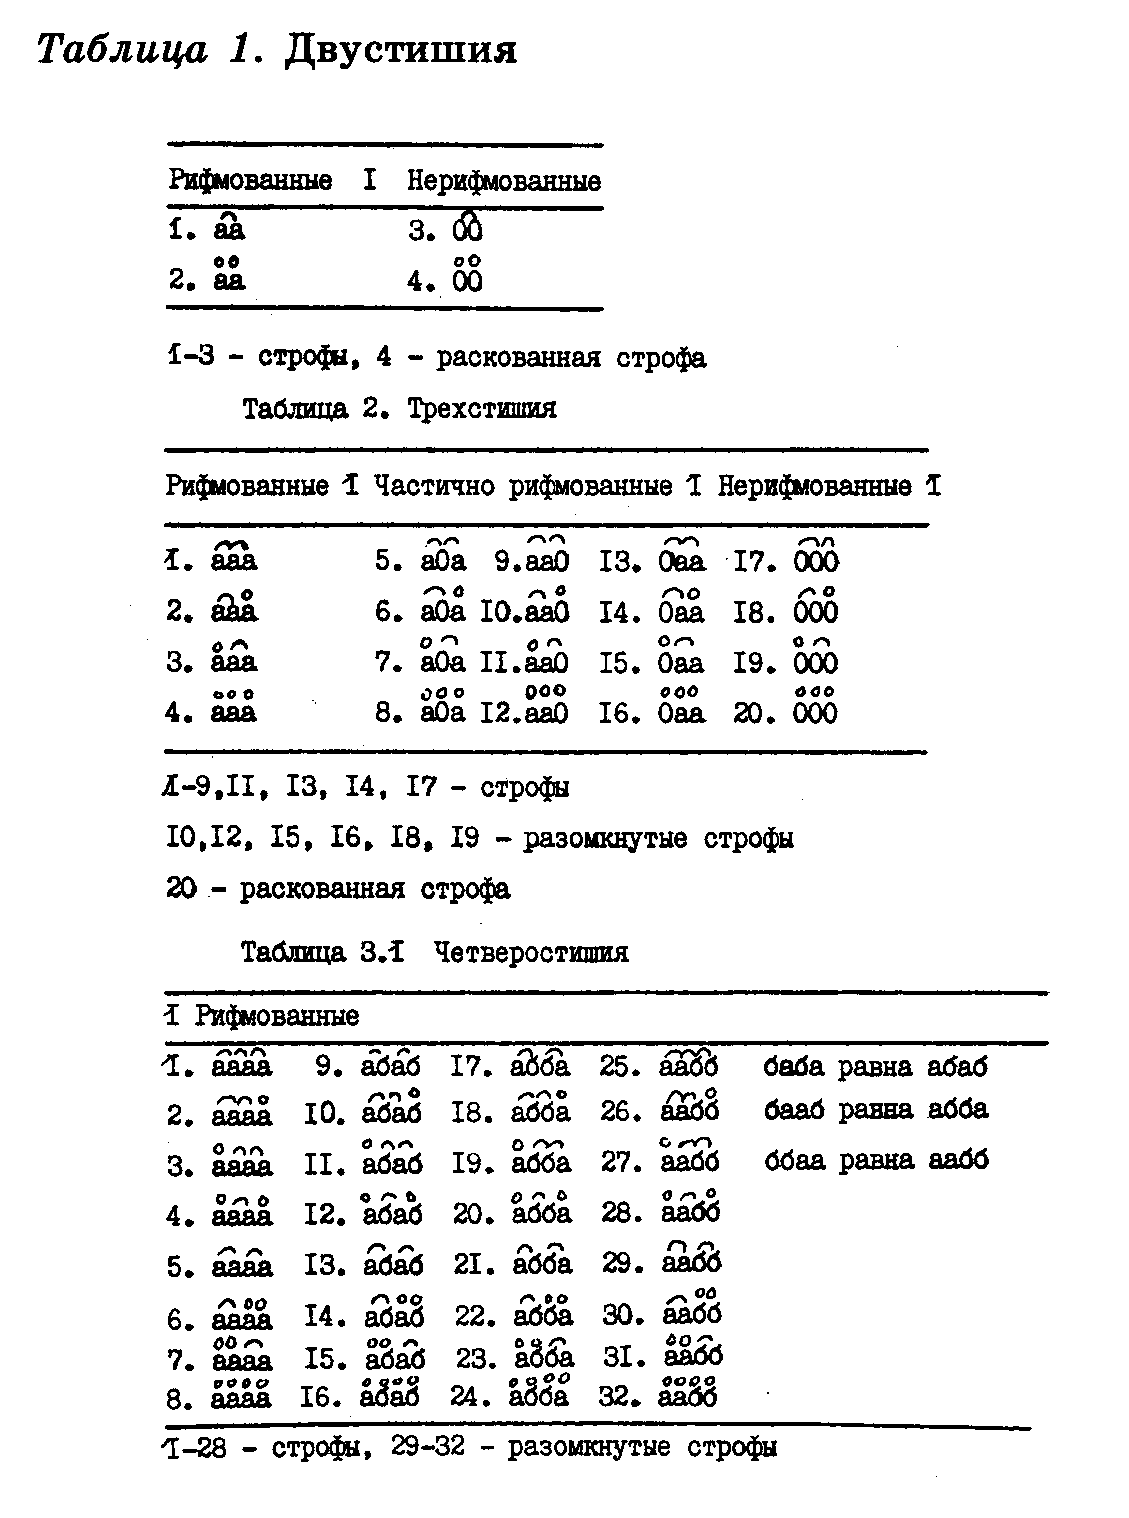 В. П. Бурич. Типология формальных структур... Таблица 3-1.